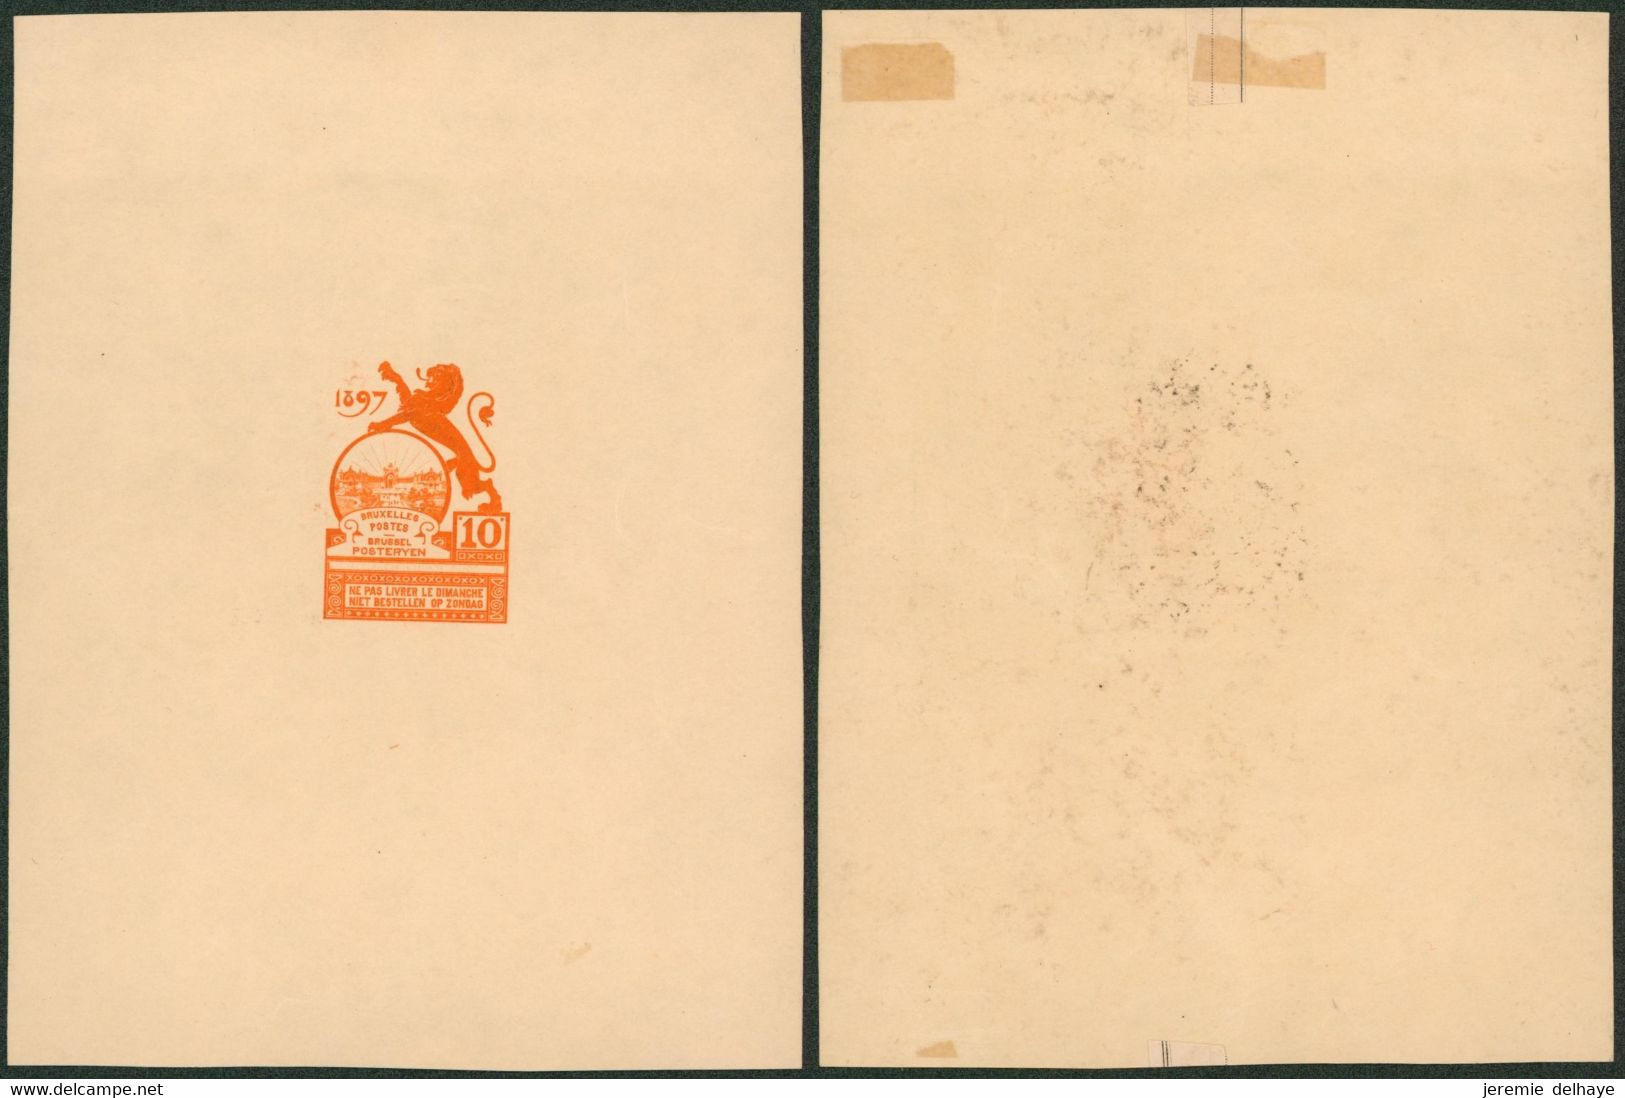 Essai - Proposition Du Peintre Louis Titz (Bruxelles Expositions 1897) Sur Papier Carton Crème (1 Couleur) : STES 2220 - Prove E Ristampe